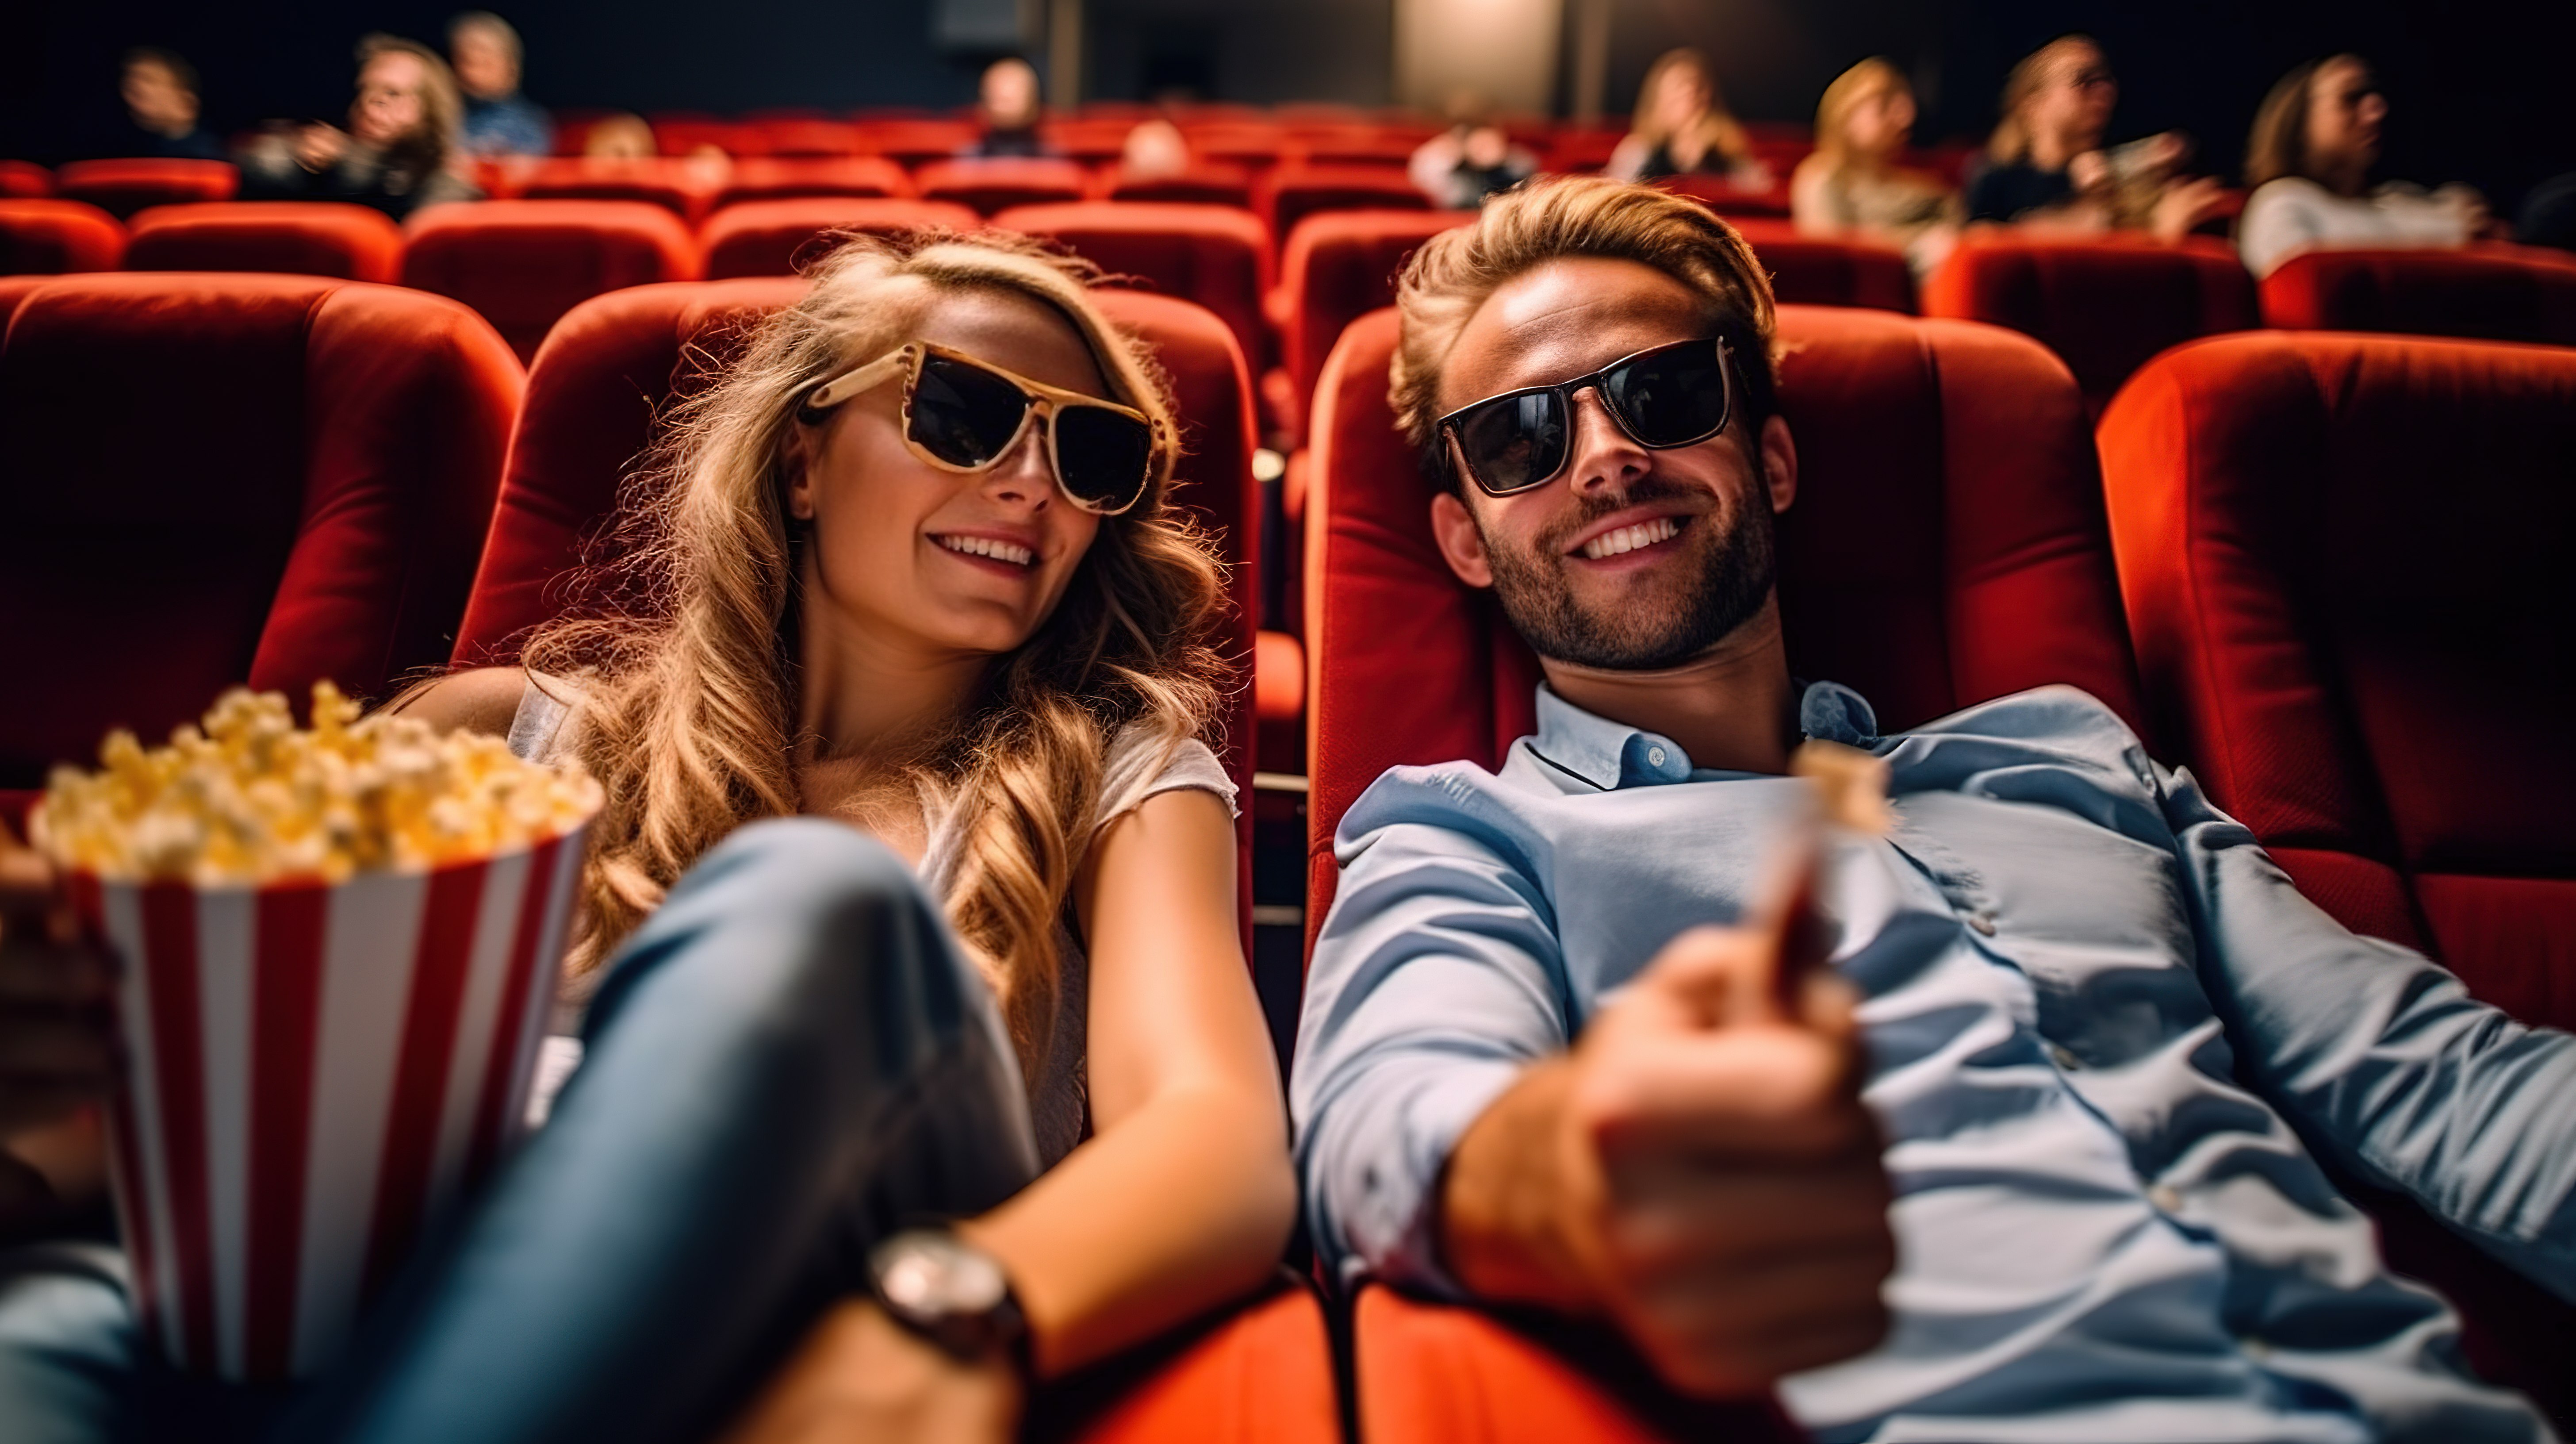 微笑的二人组在电影院欣赏 3D 电影并咀嚼爆米花图片